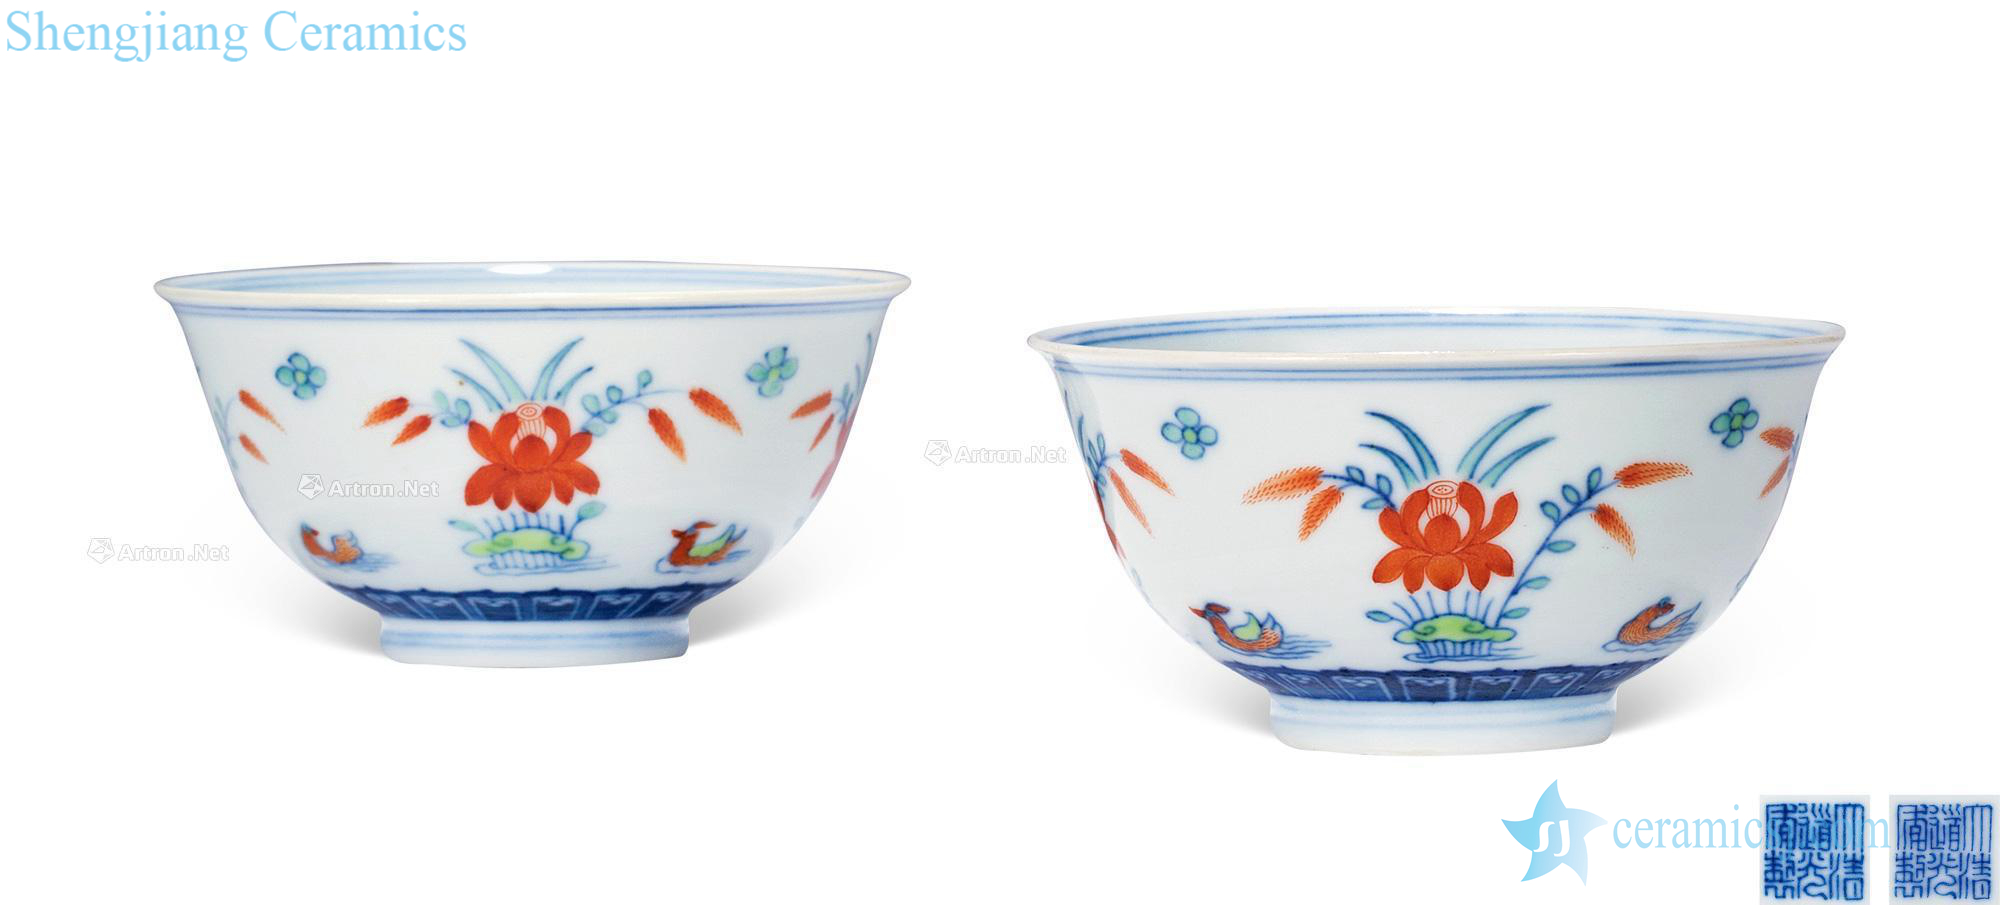 Qing daoguang bucket color lotus pond yuanyang bowl (a)